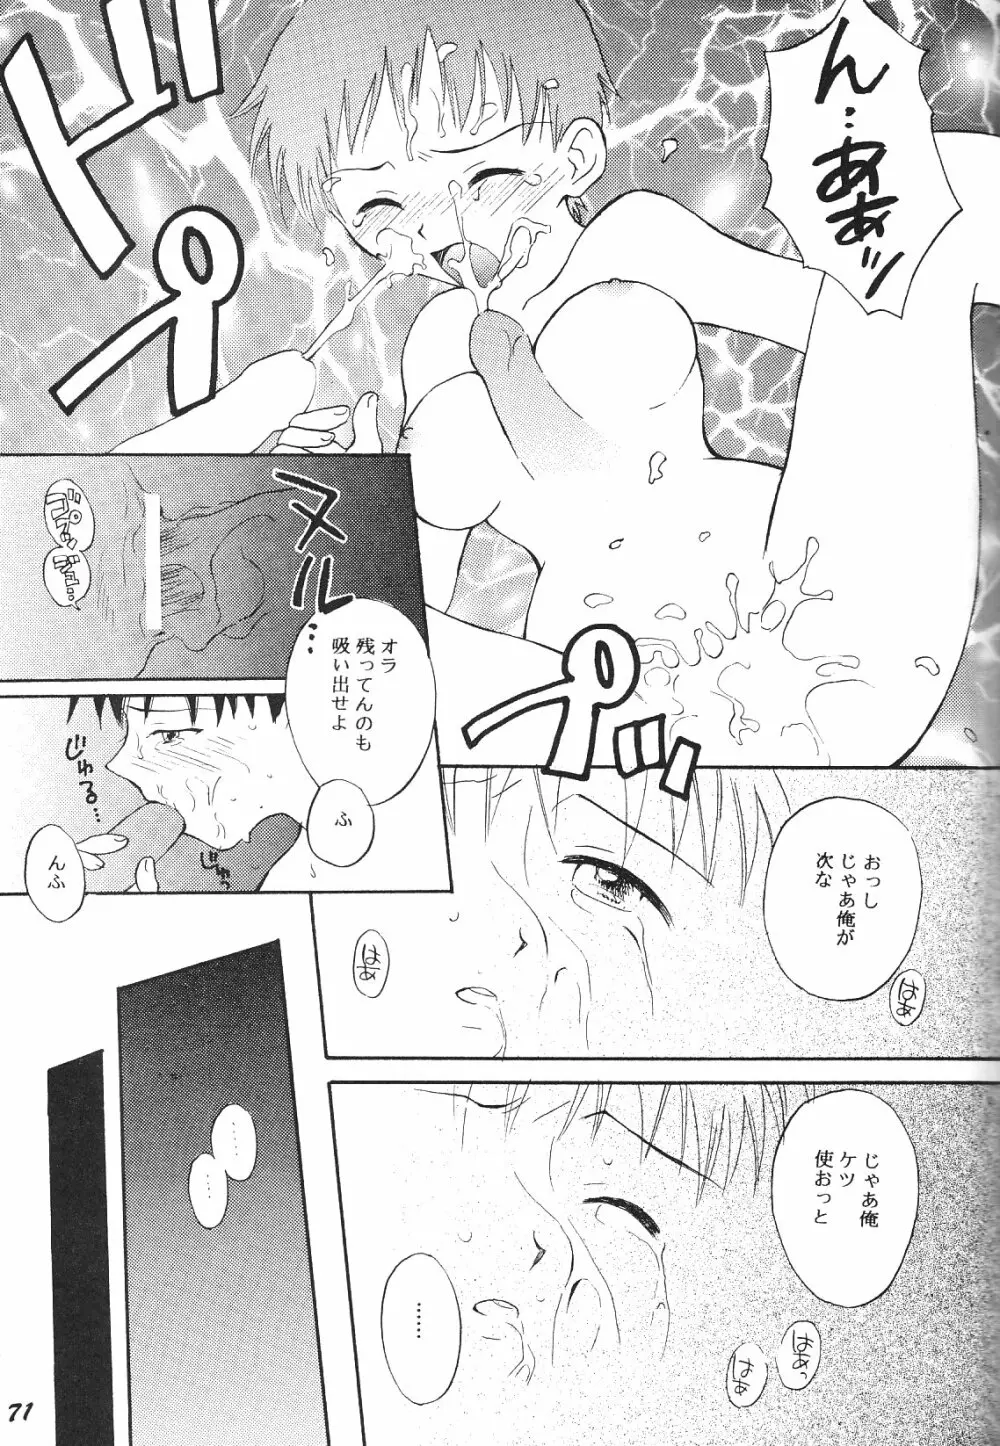 Maniac Juice 女シンジ再録集 ’96-’99 71ページ